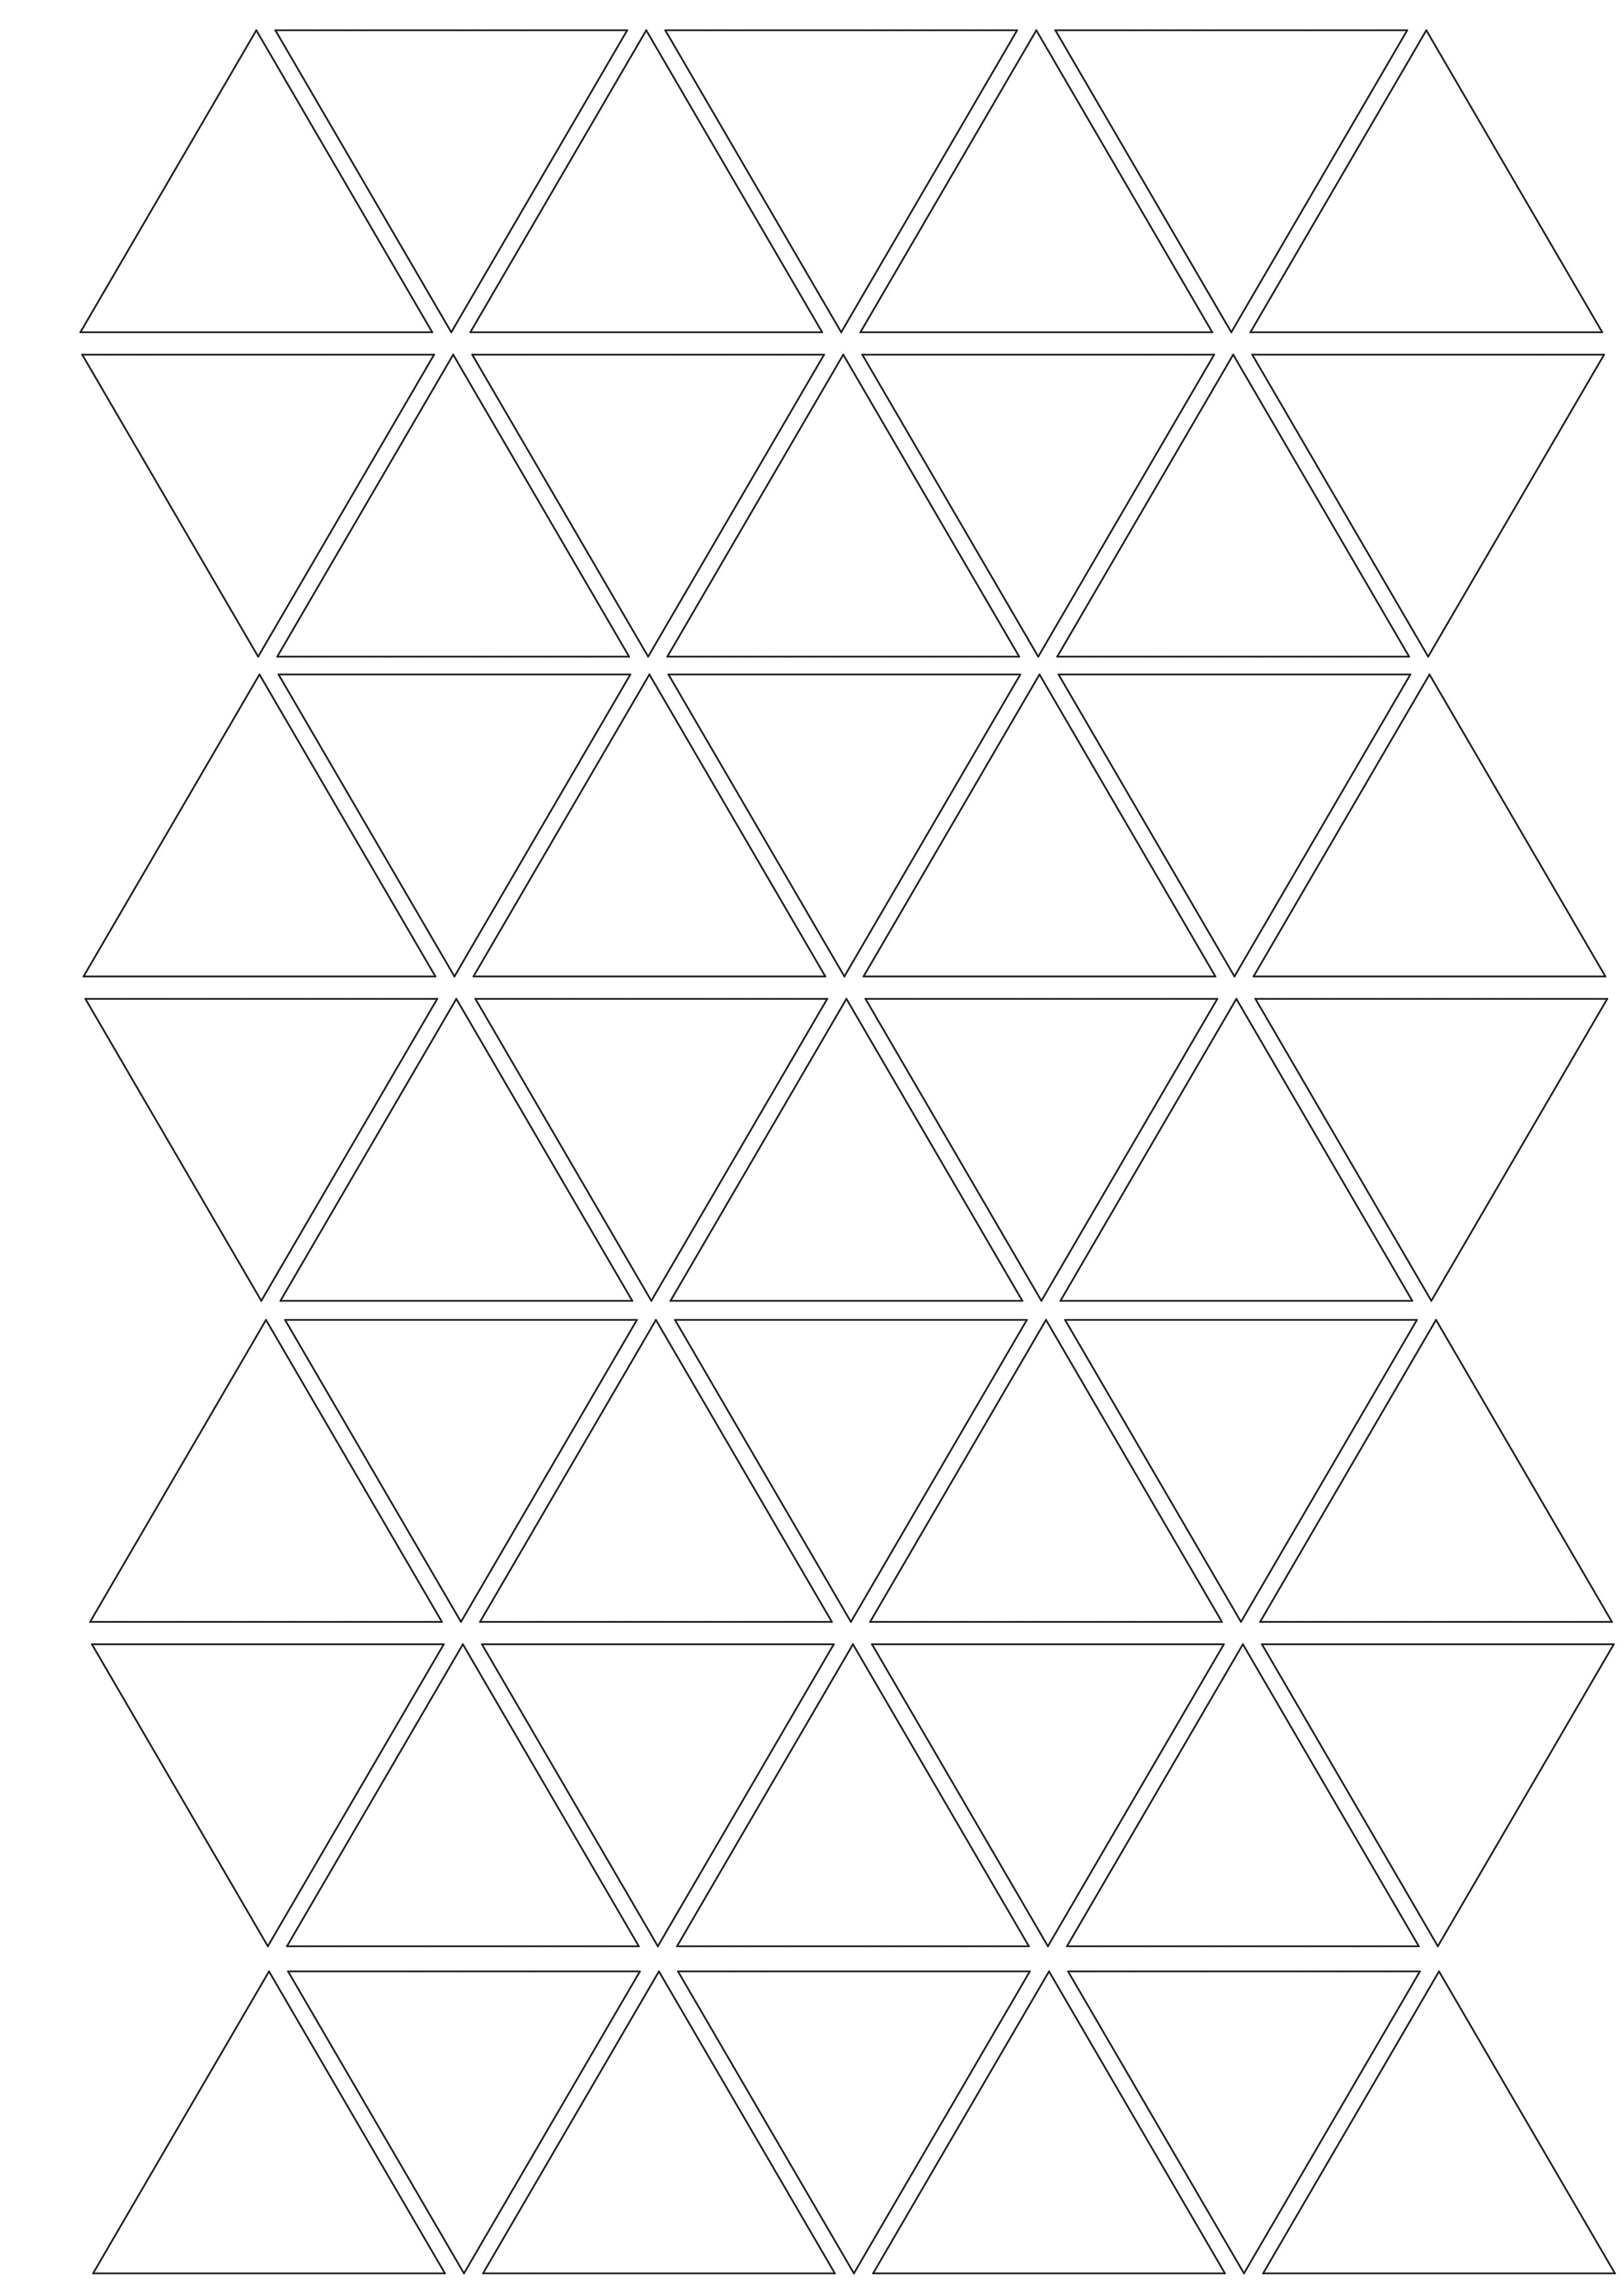 Wandtattoo/Dekoaufkleber- Dreiecke in groß oder klein